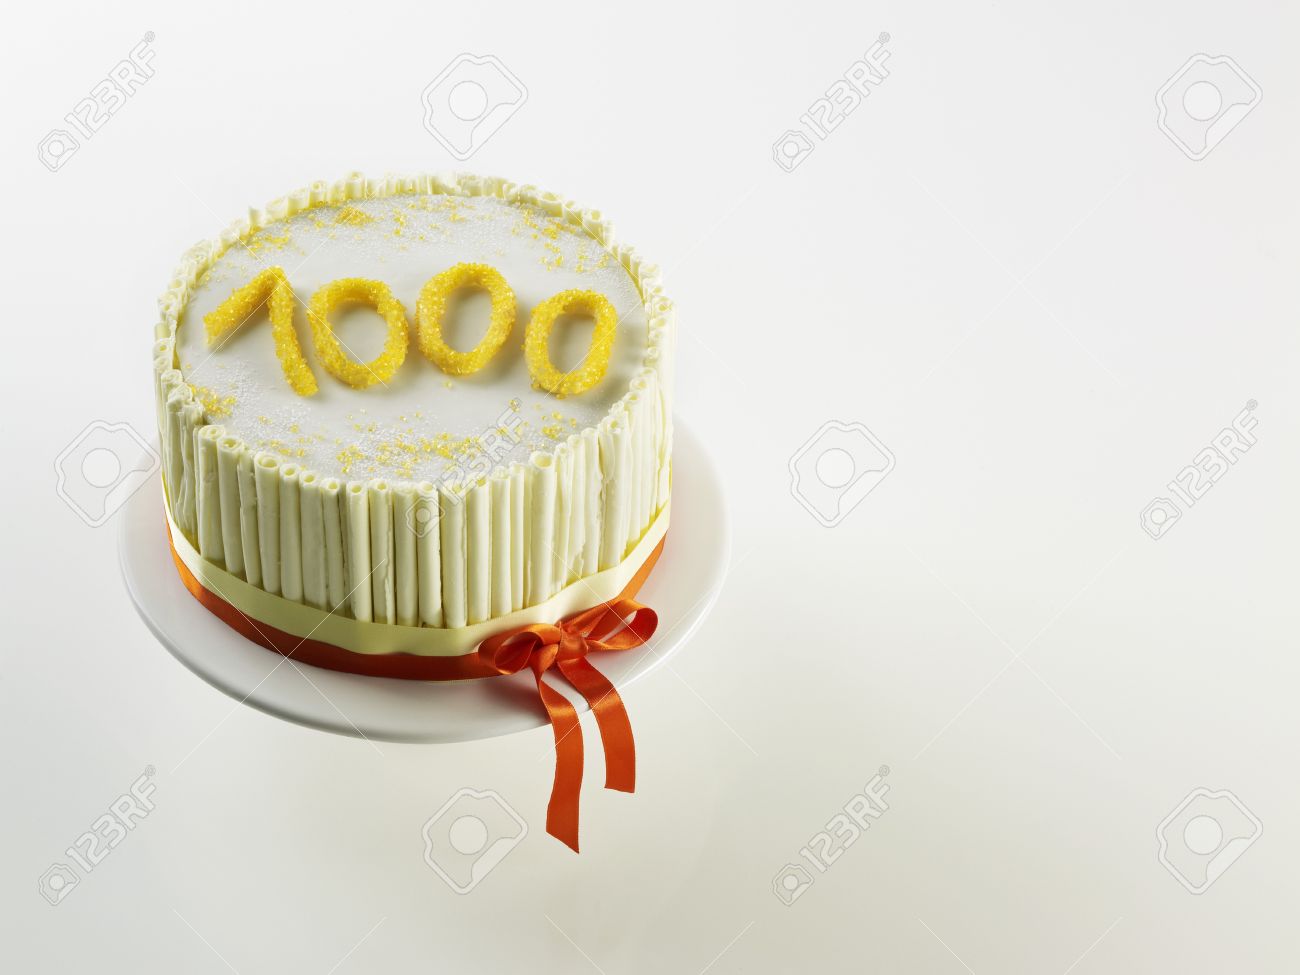 32799482-White-anniversary-cake-with-the-figure-1000--Stock-Photo.jpg